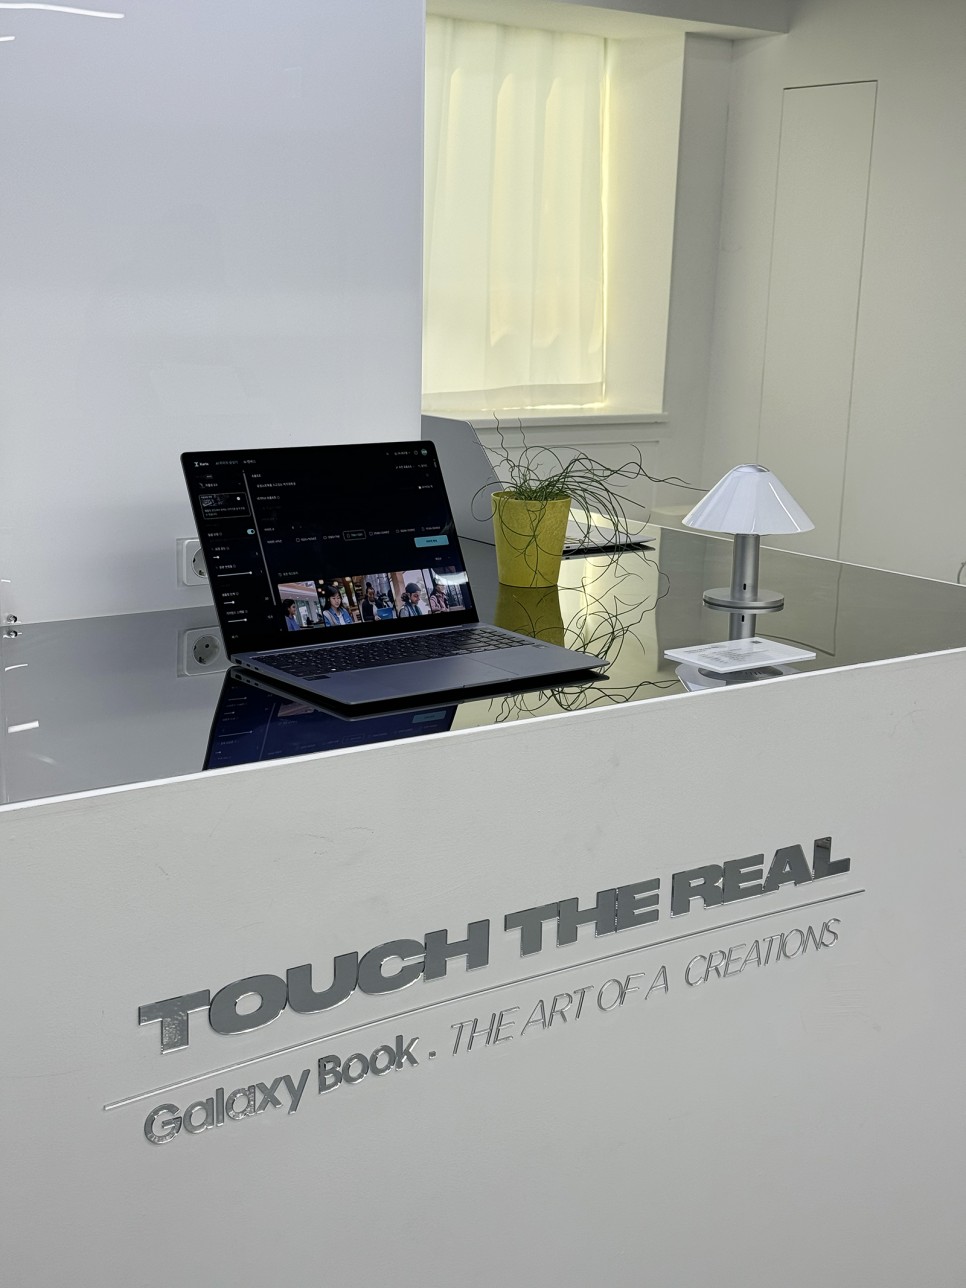 삼성 갤럭시북4 Touch The Real AI 서울 을지로 전시회, 인텔 CPU 경험하기